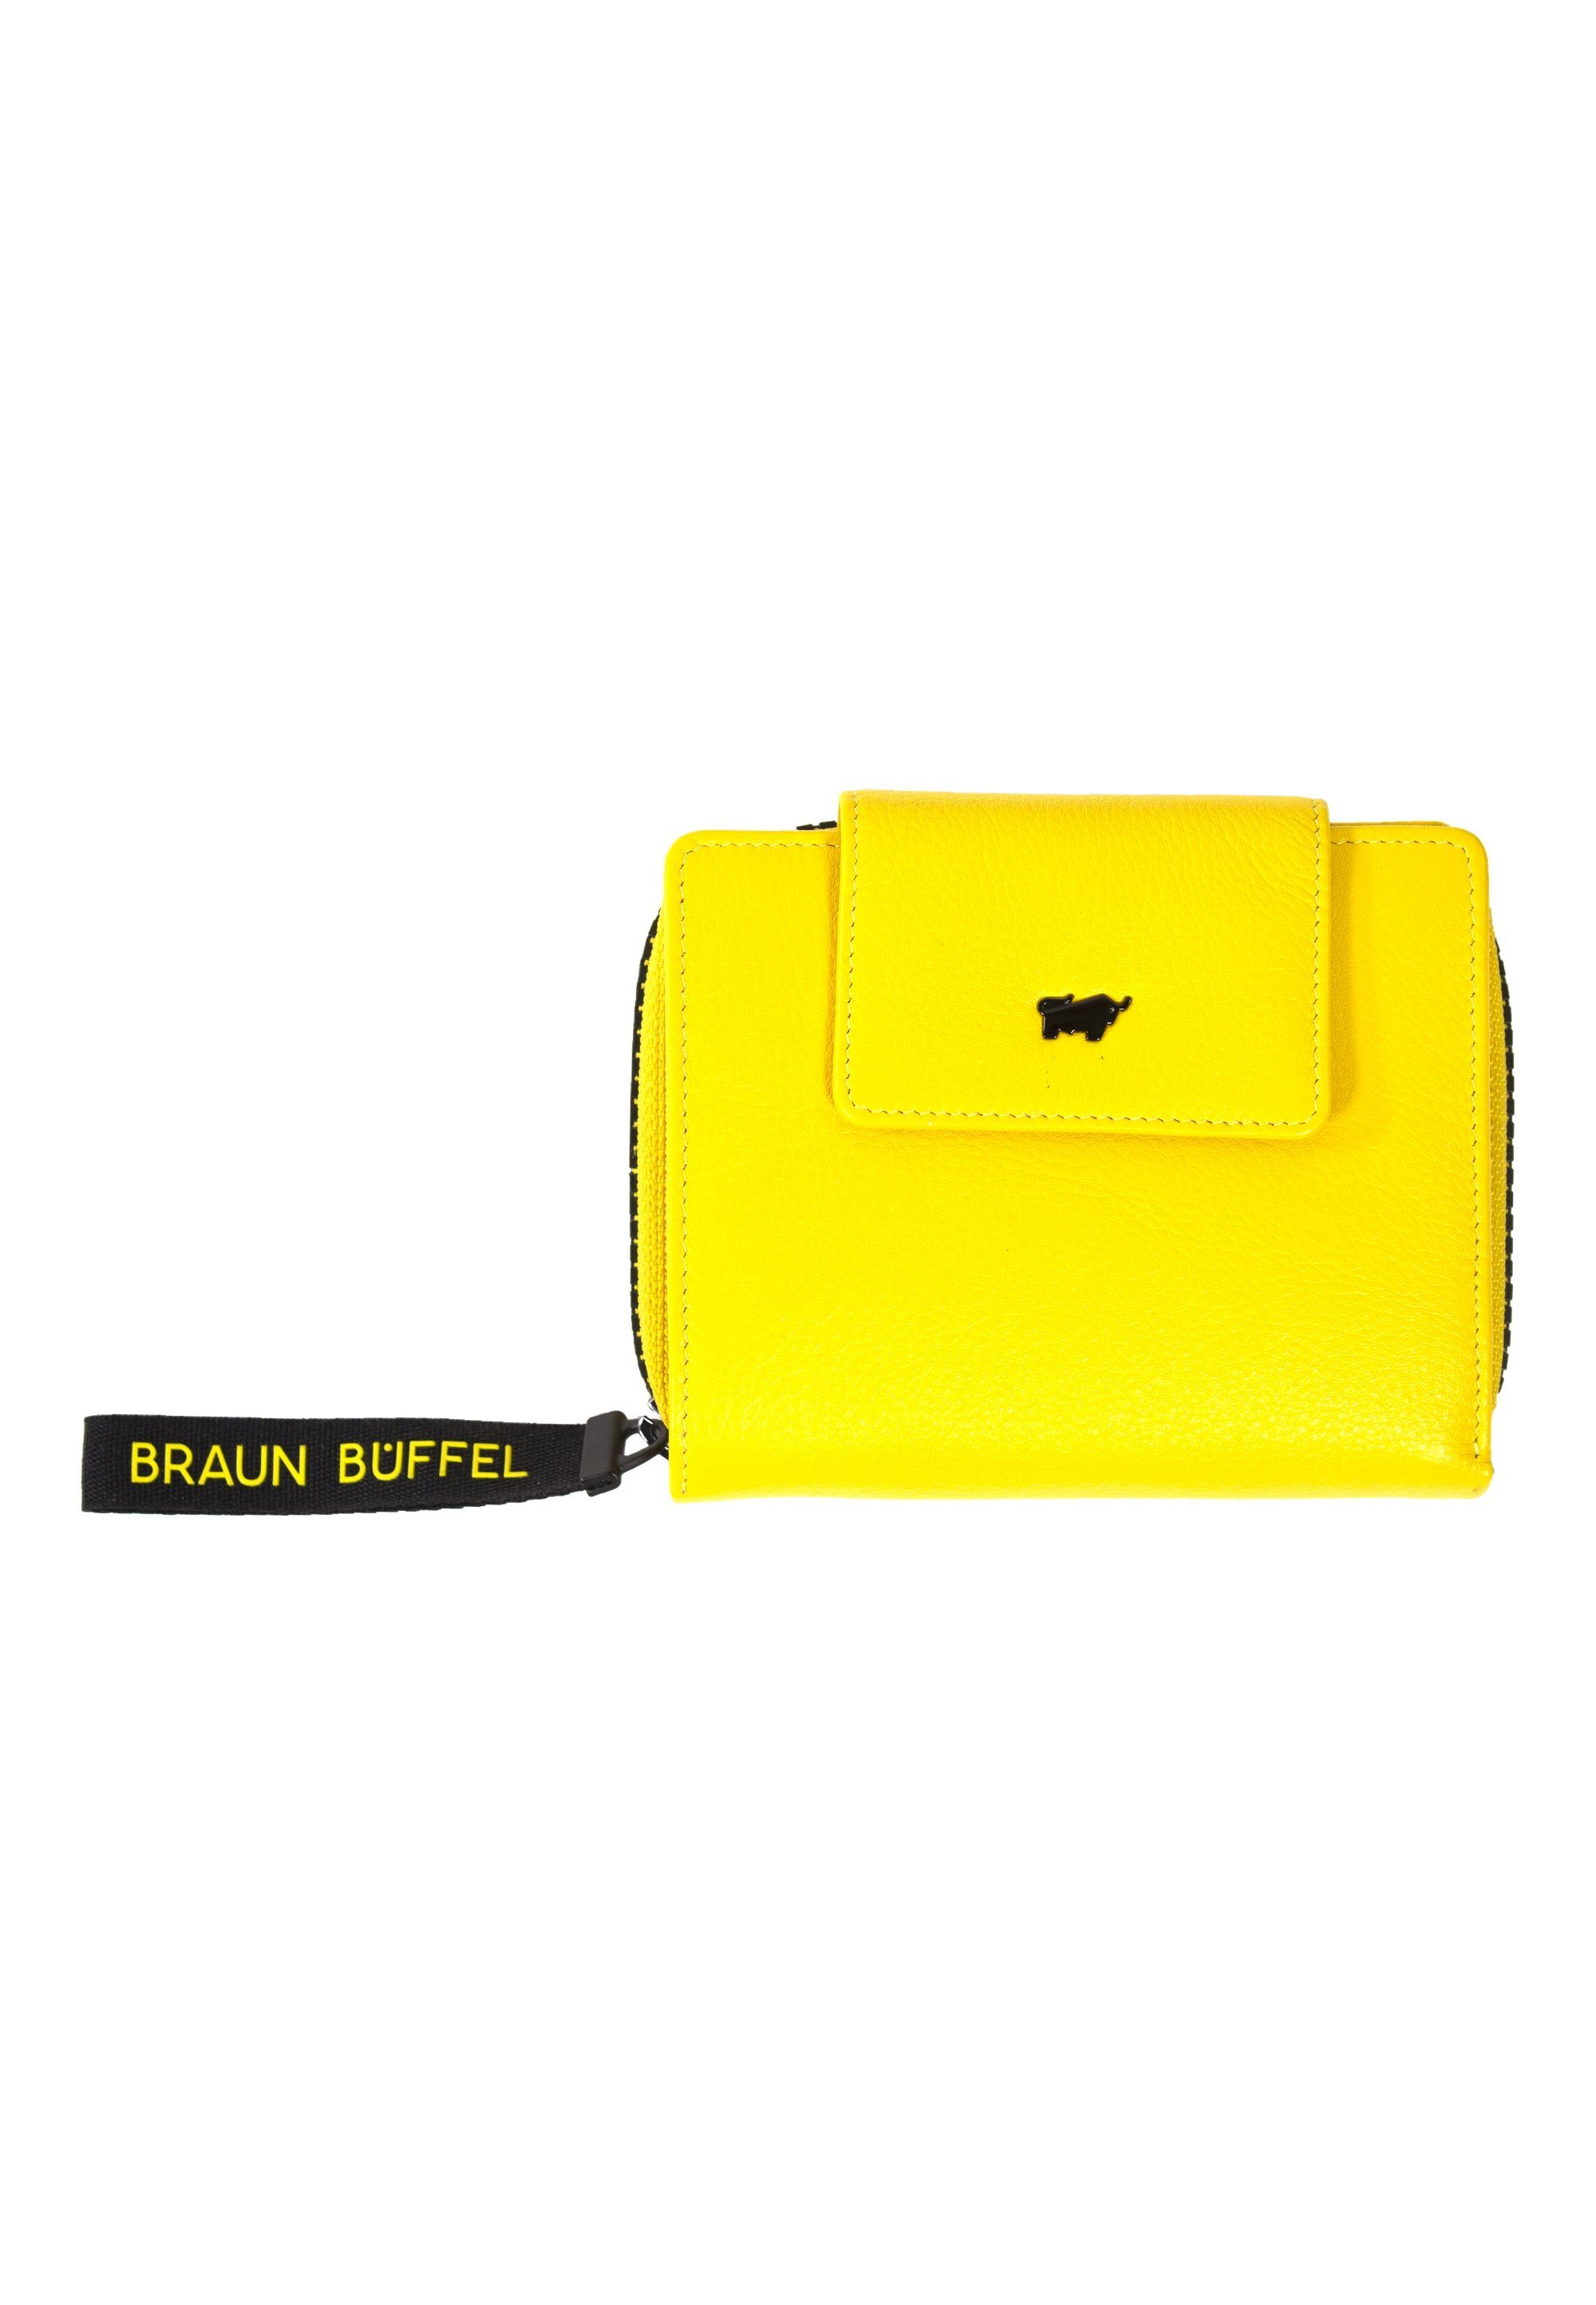 Braun Büffel Geldbörse Yellow ZIP-Band mit CAPRI, stylischem